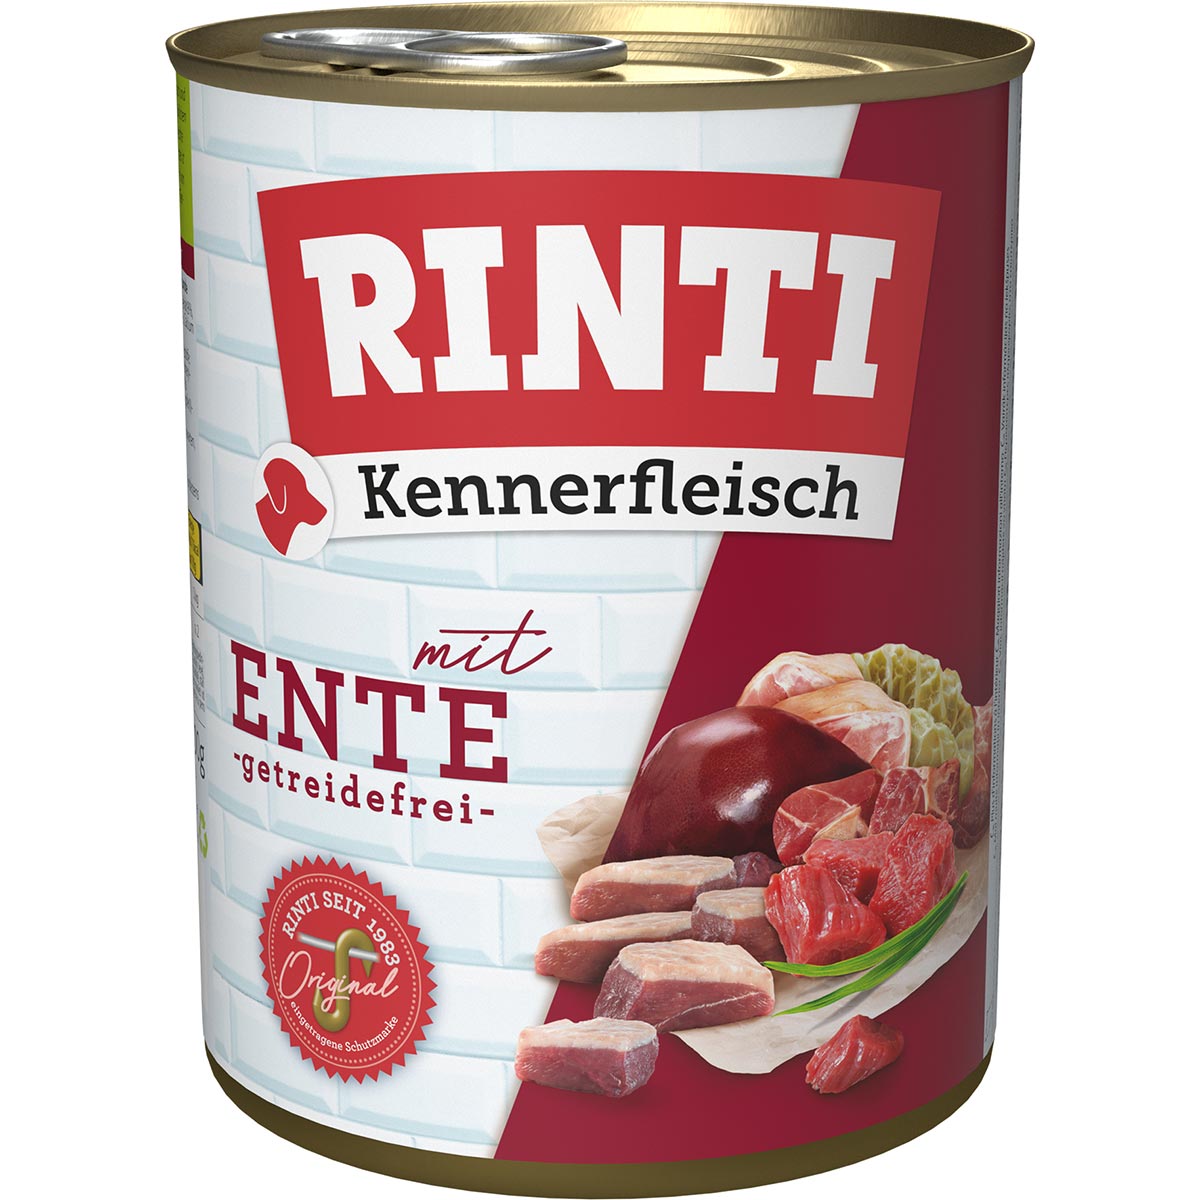 Rinti Kennerfleisch Ente 24x800g von Rinti